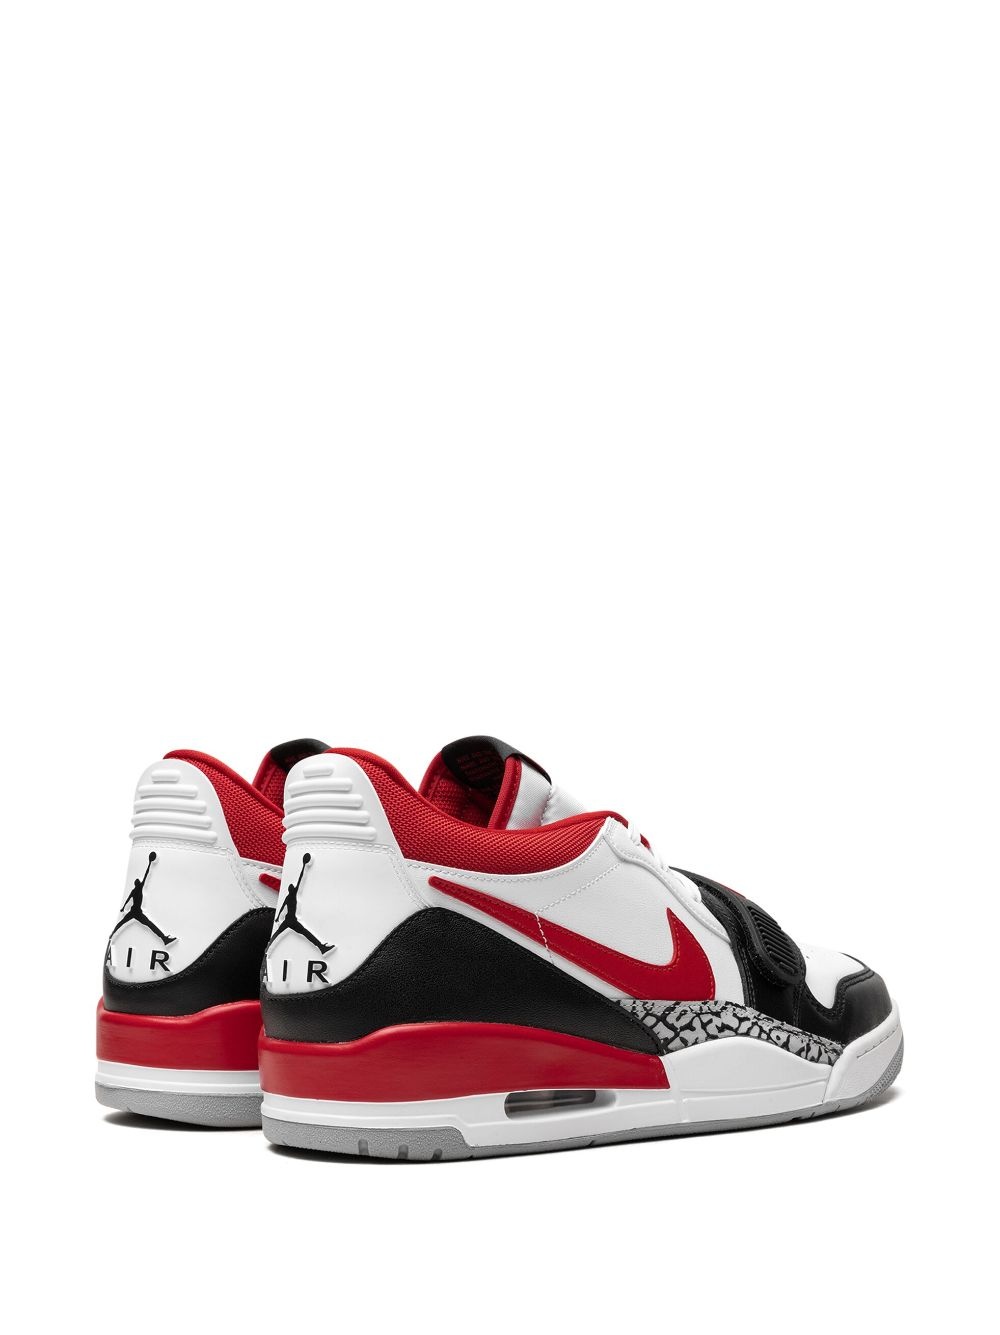 Air Jordan Legacy 312 Low "Fire Red" sneakers - 3